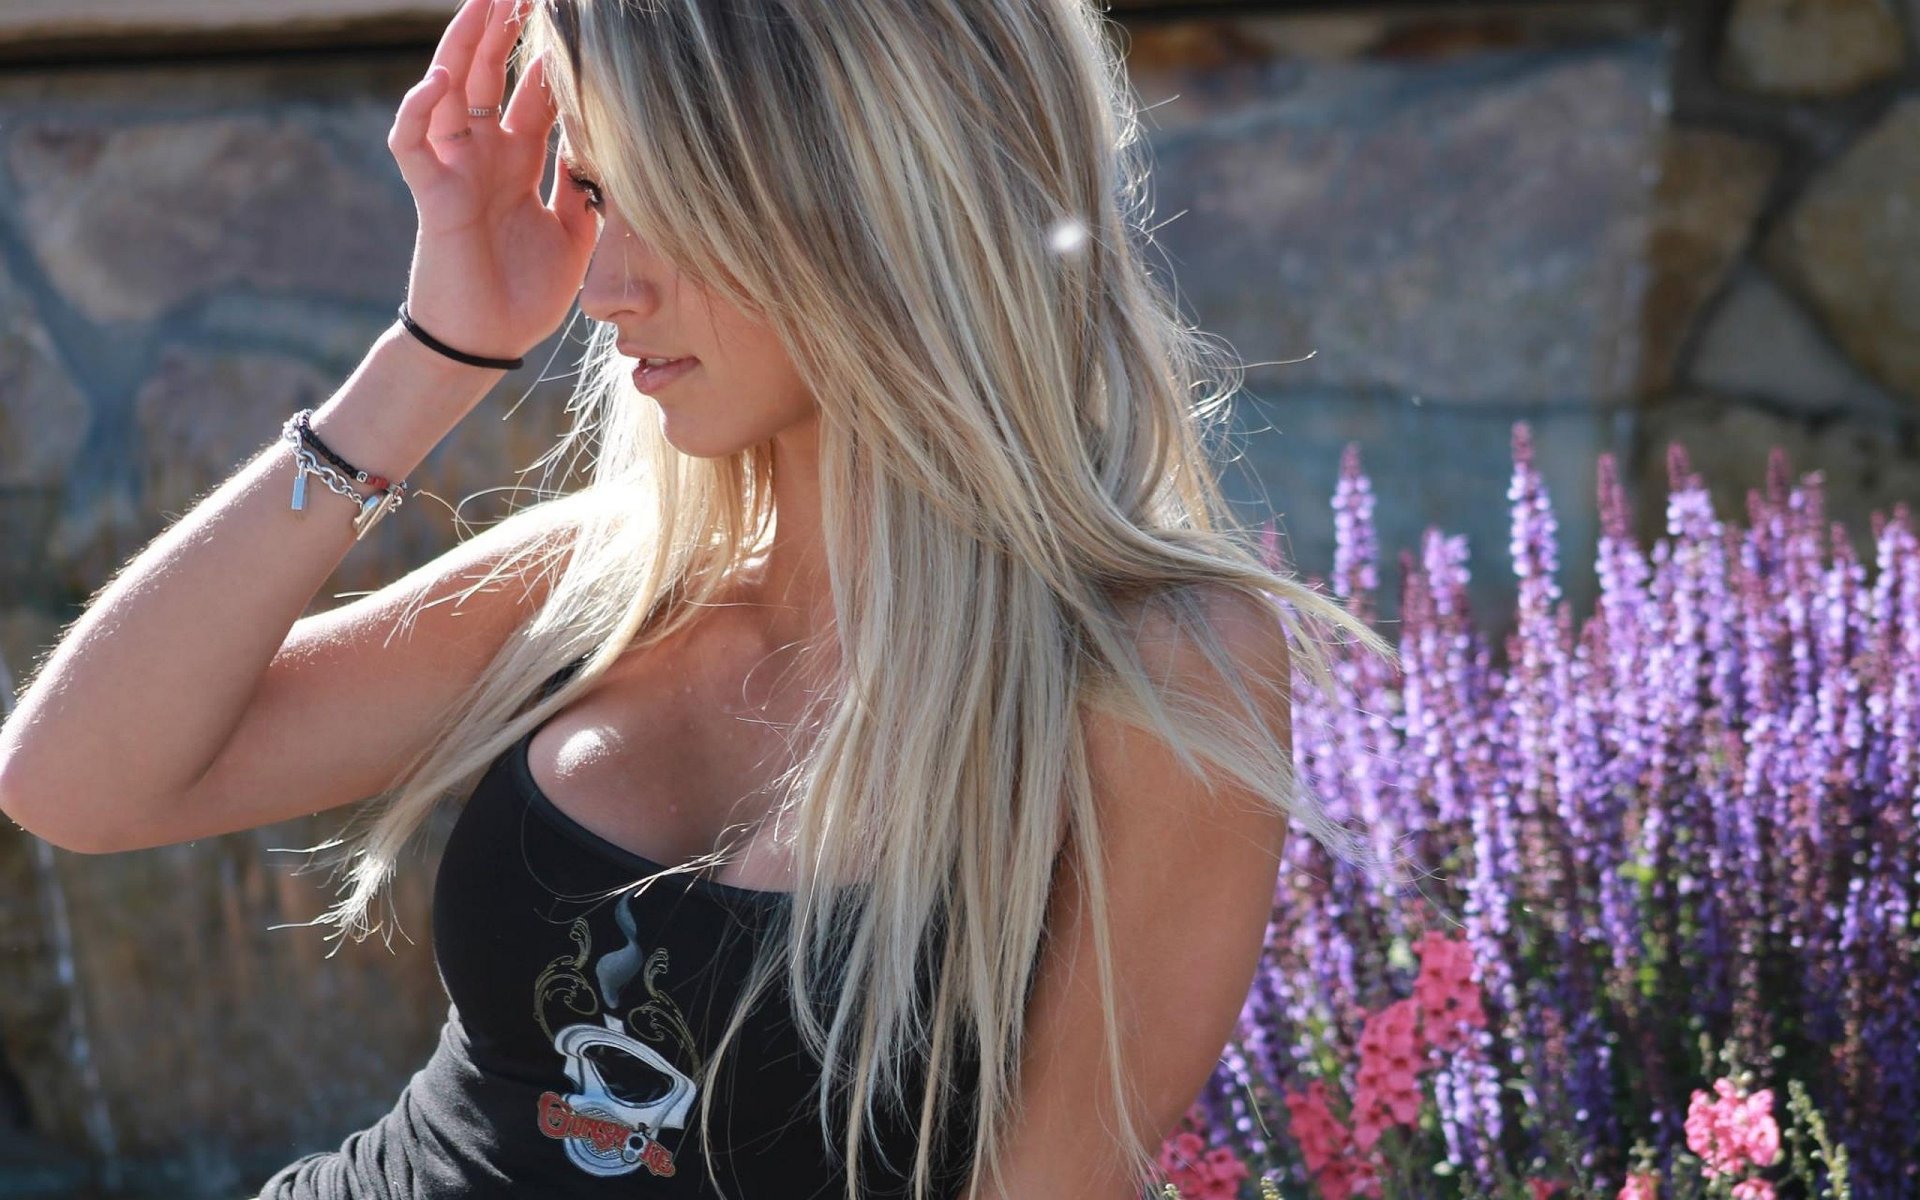 19-ти летняя блондинка показывает розовую киску перед камерой